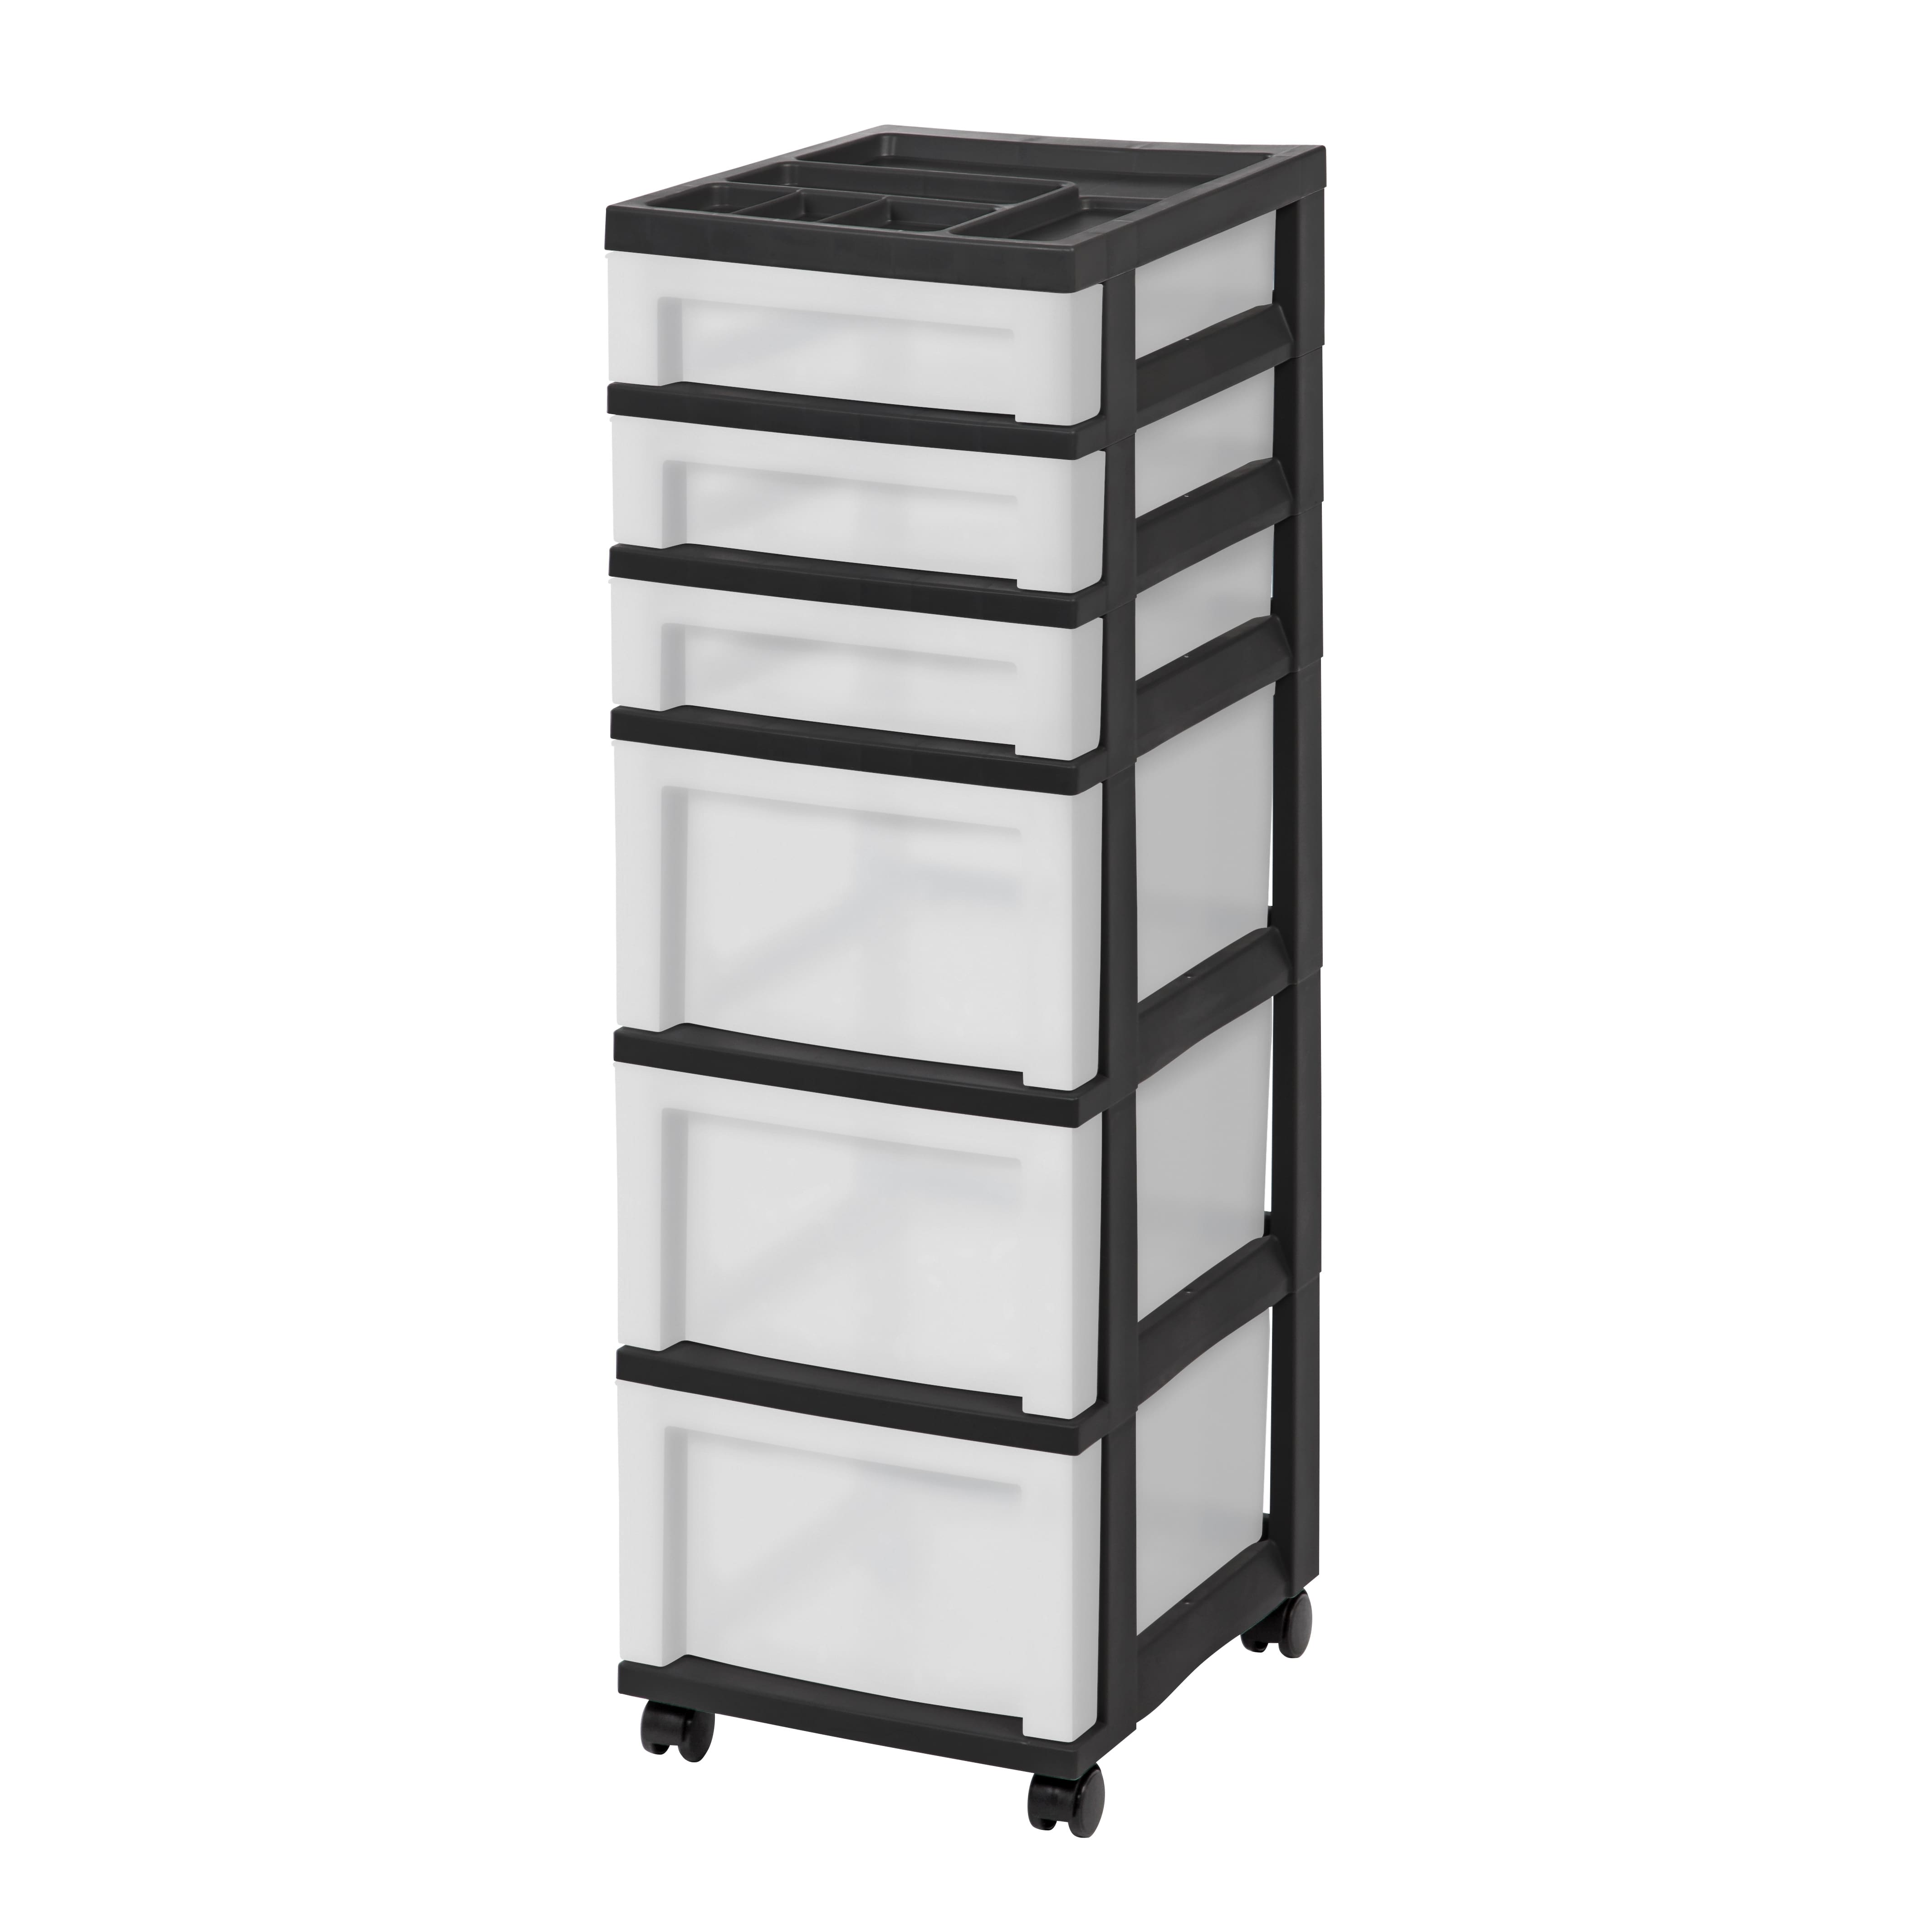 Iris 5 Drawer Storage Cart with Organizer Top Black